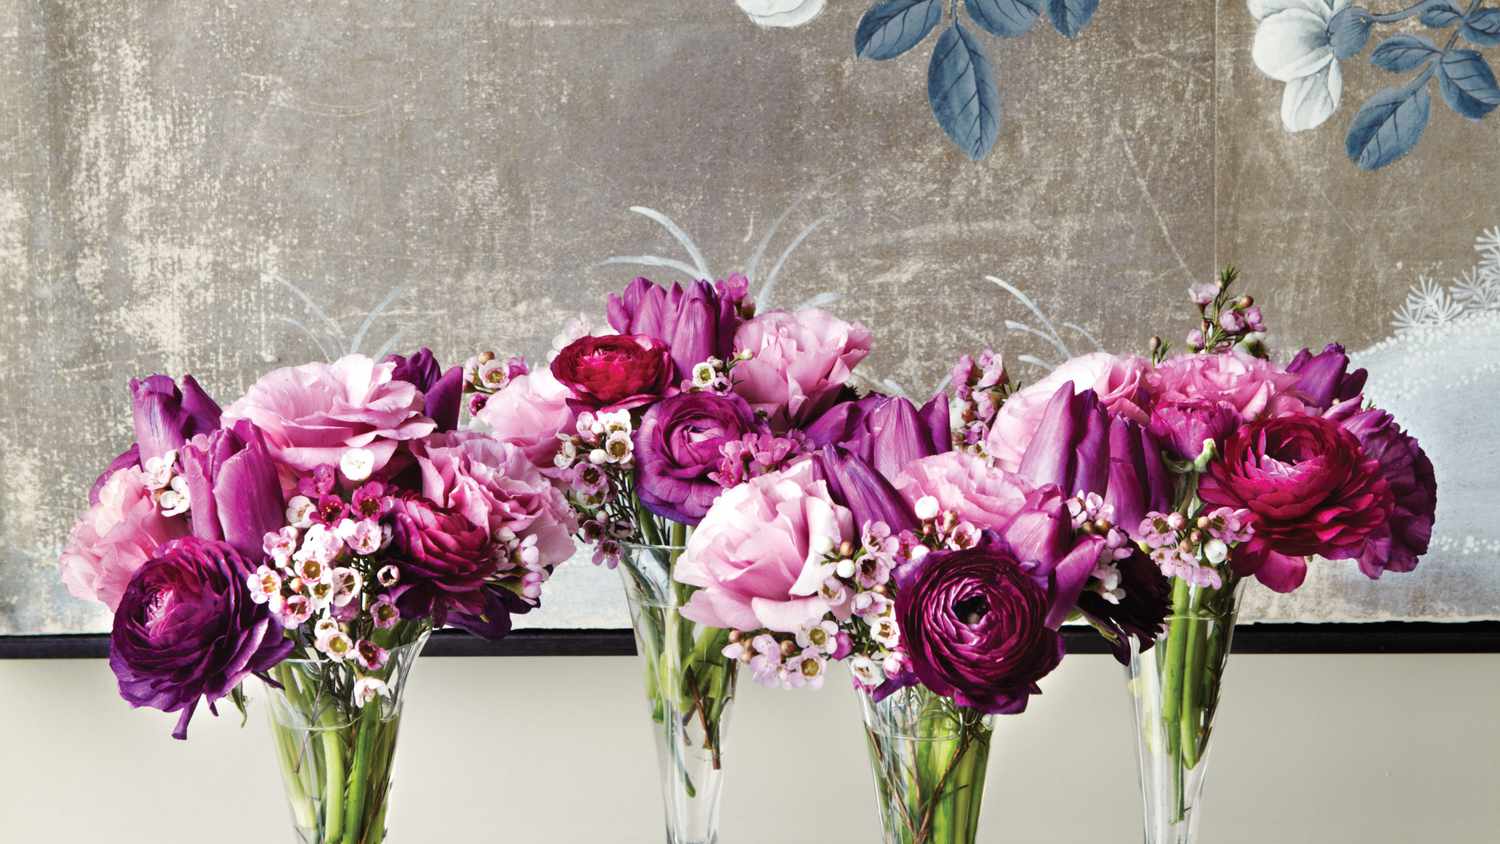 Cobalt Rose Vase 8'' and Flower Guide Booklet Home Decor or Office. Weddings Decorative Glass Flower Vase for Floral Arrangements